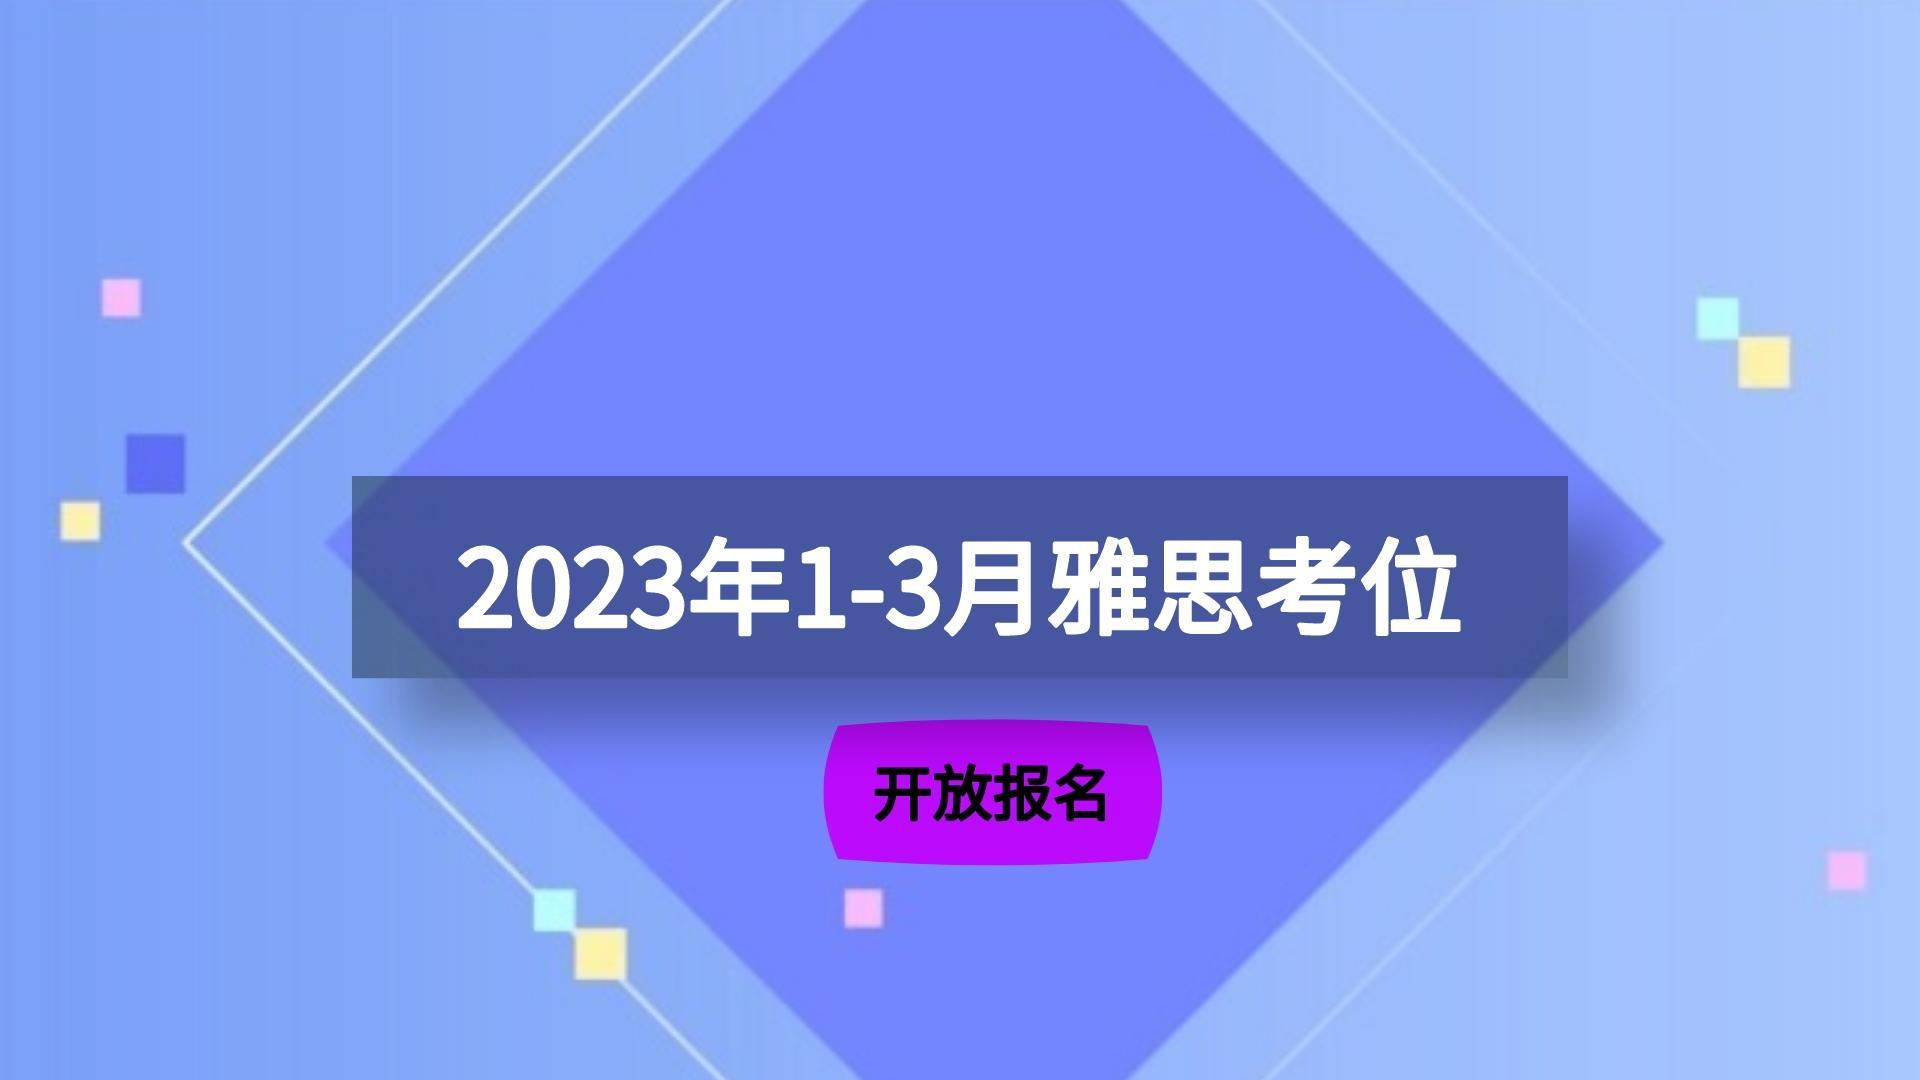 【官宣】2023年1-3月雅思考位已开放报名